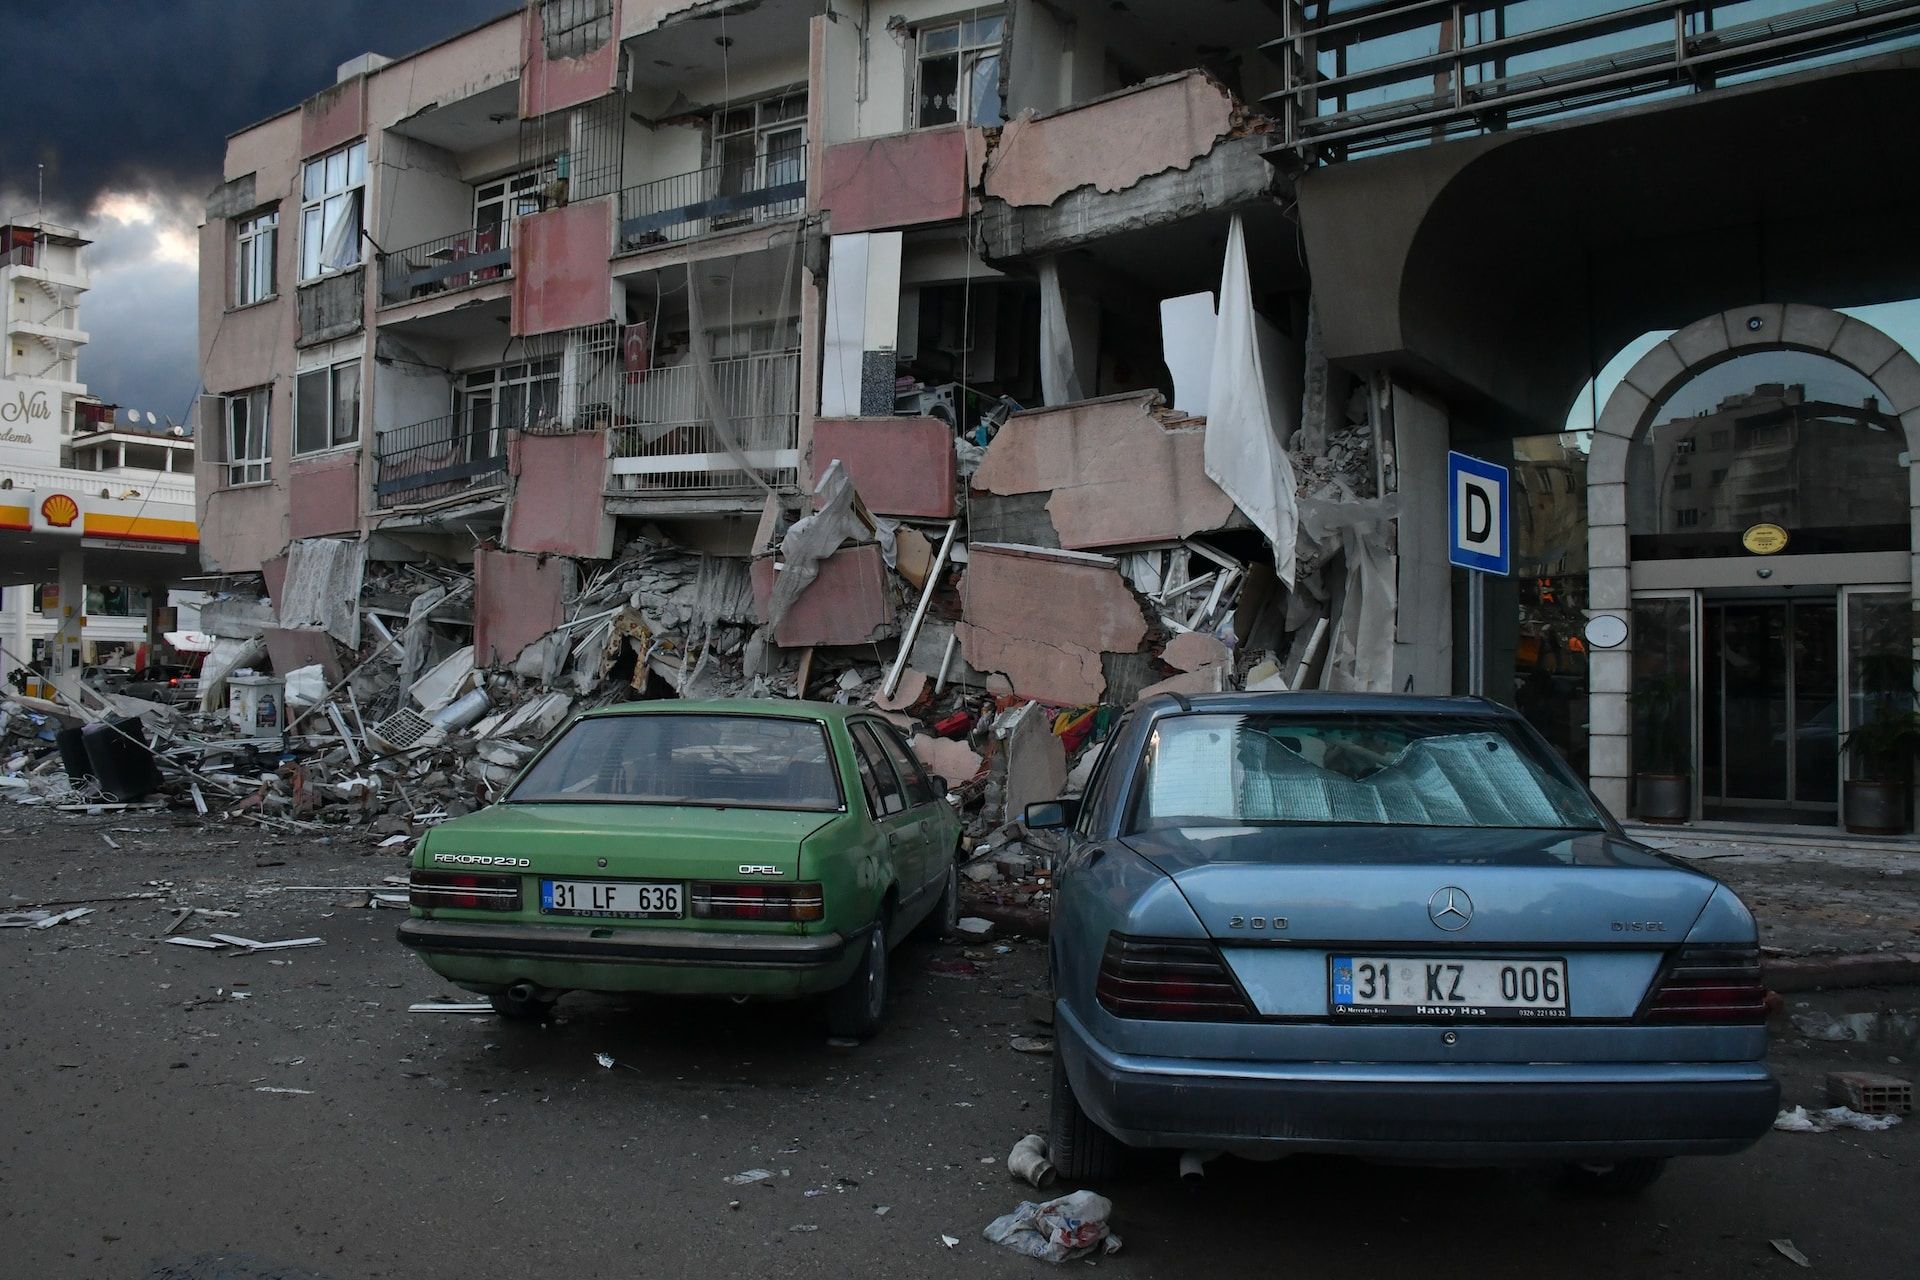 Deux voitures garées devant un immeuble à moitié détruit par un tremblement de terre en Turquie - Photo de Çağlar Oskay sur https://unsplash.com/fr/photos/quelques-voitures-garees-devant-un-immeuble-Lva3ACKlL_8